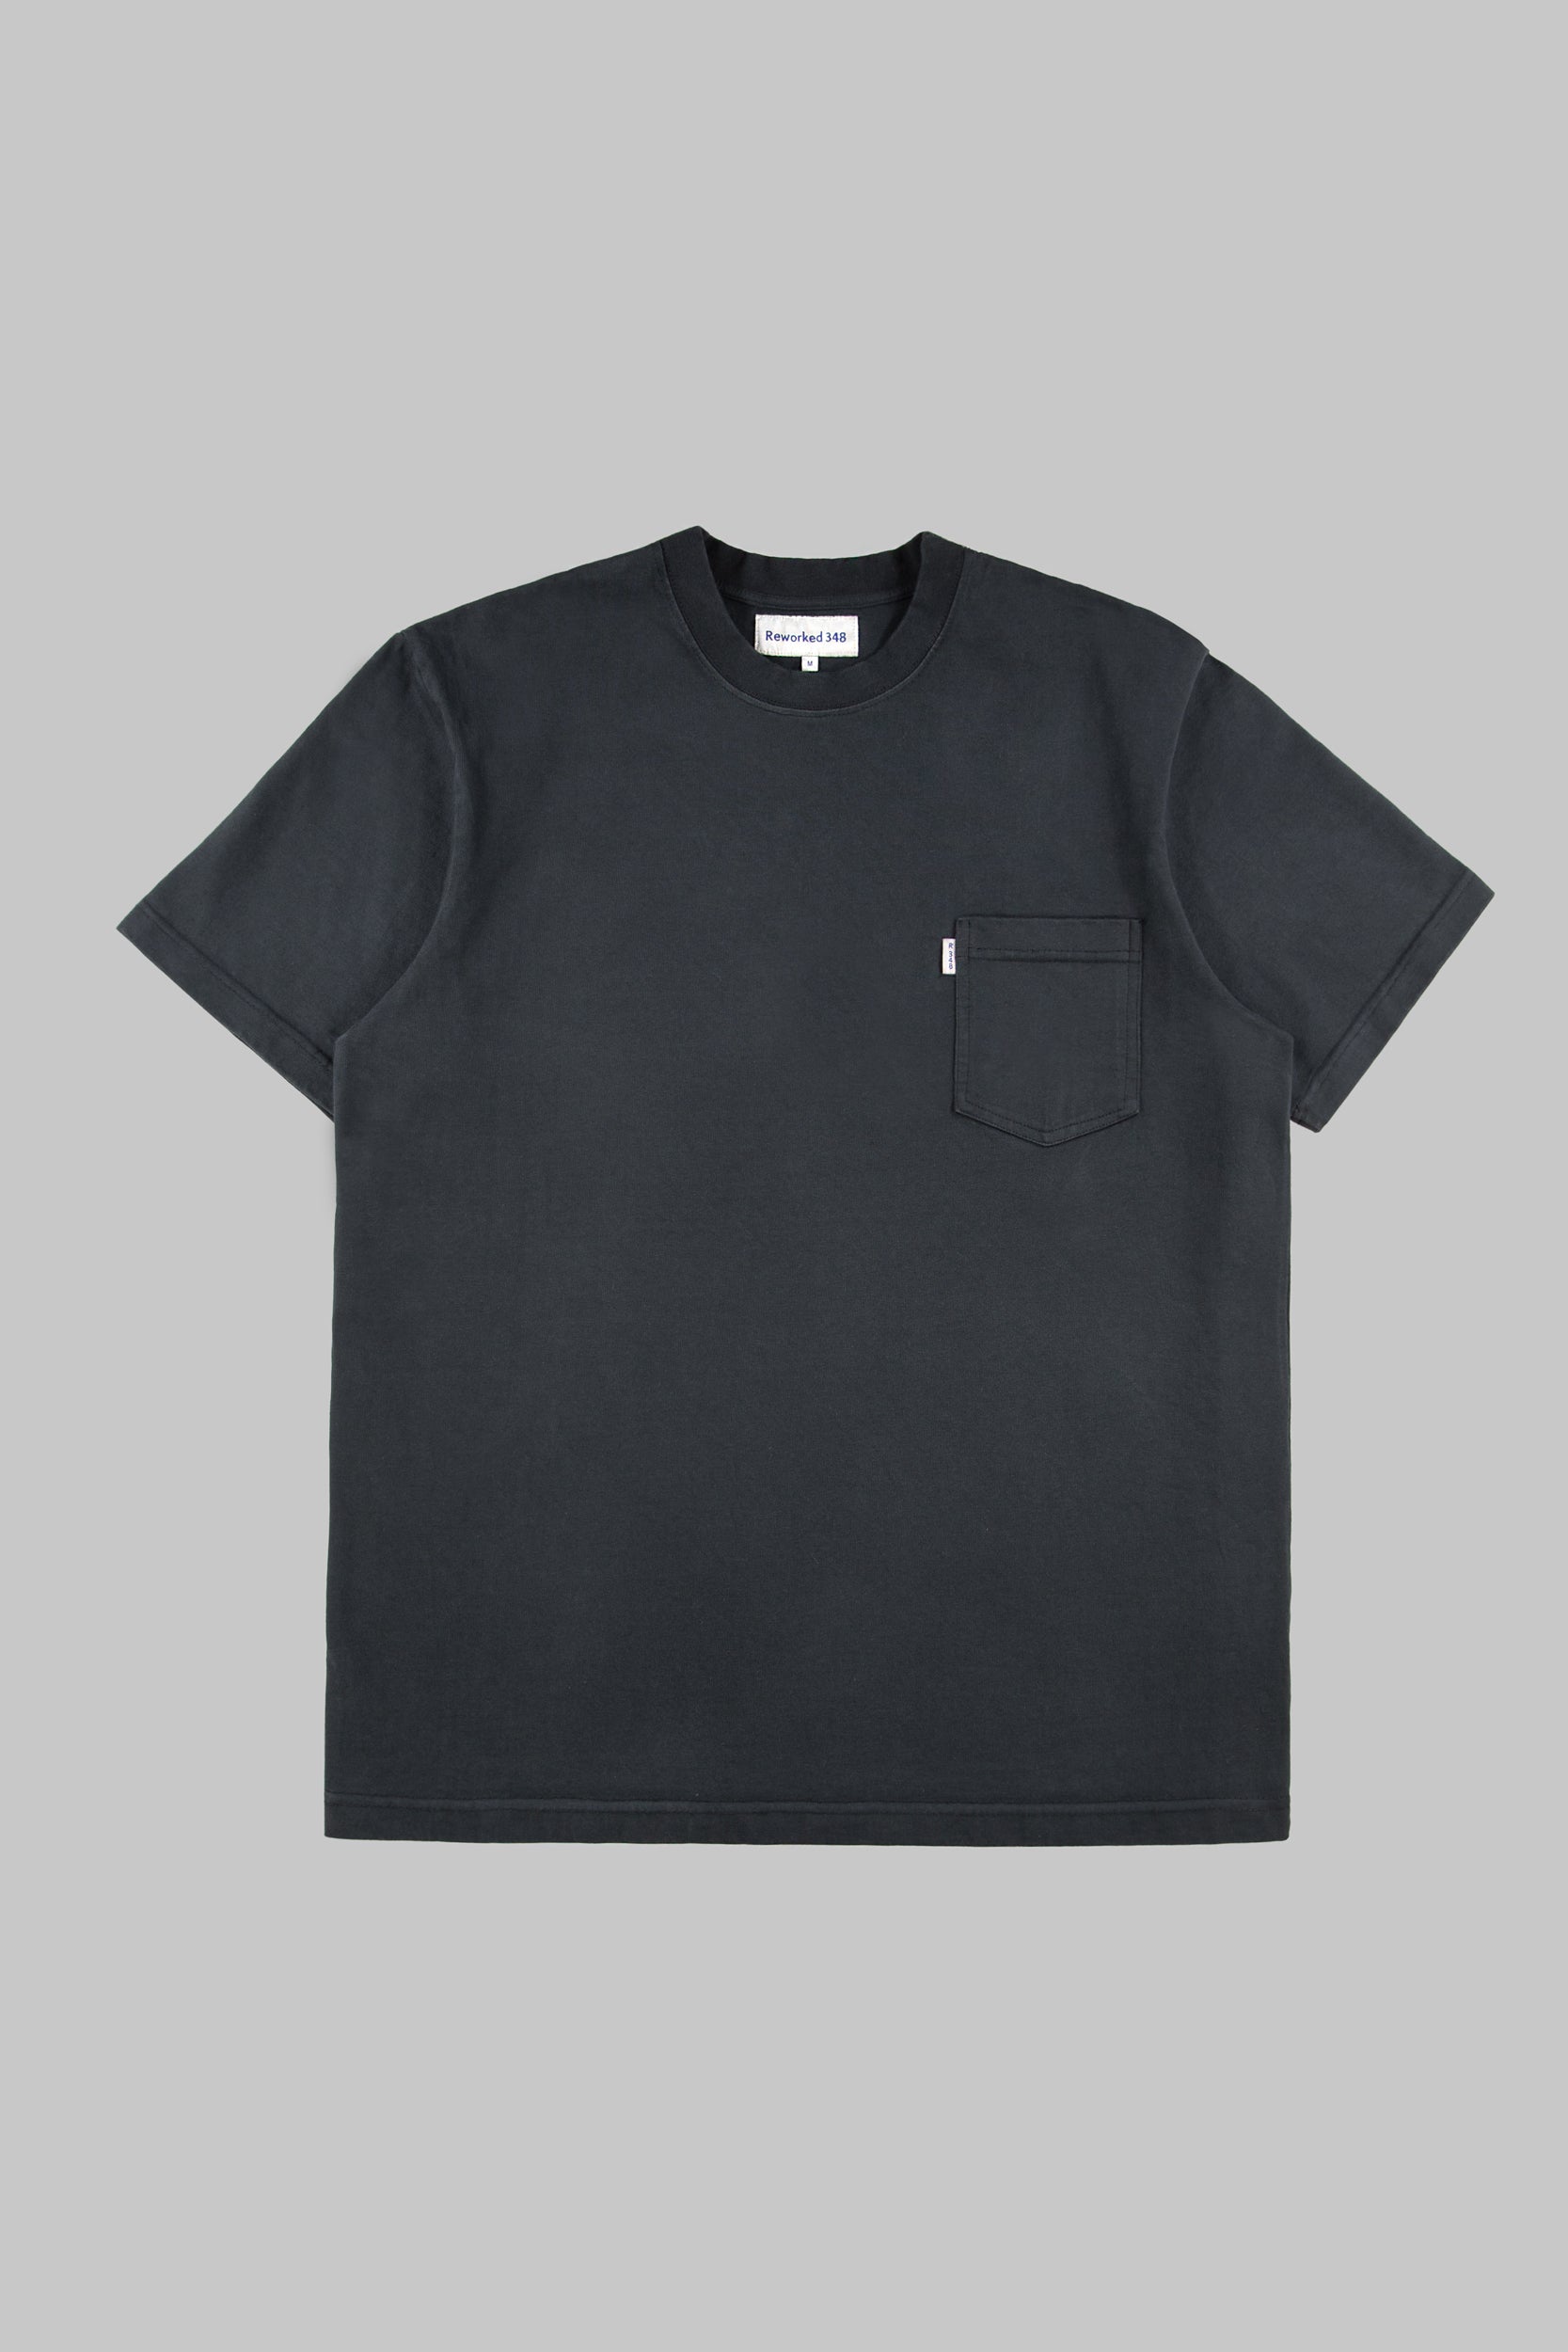 Pocket T-Shirt Vintage Black